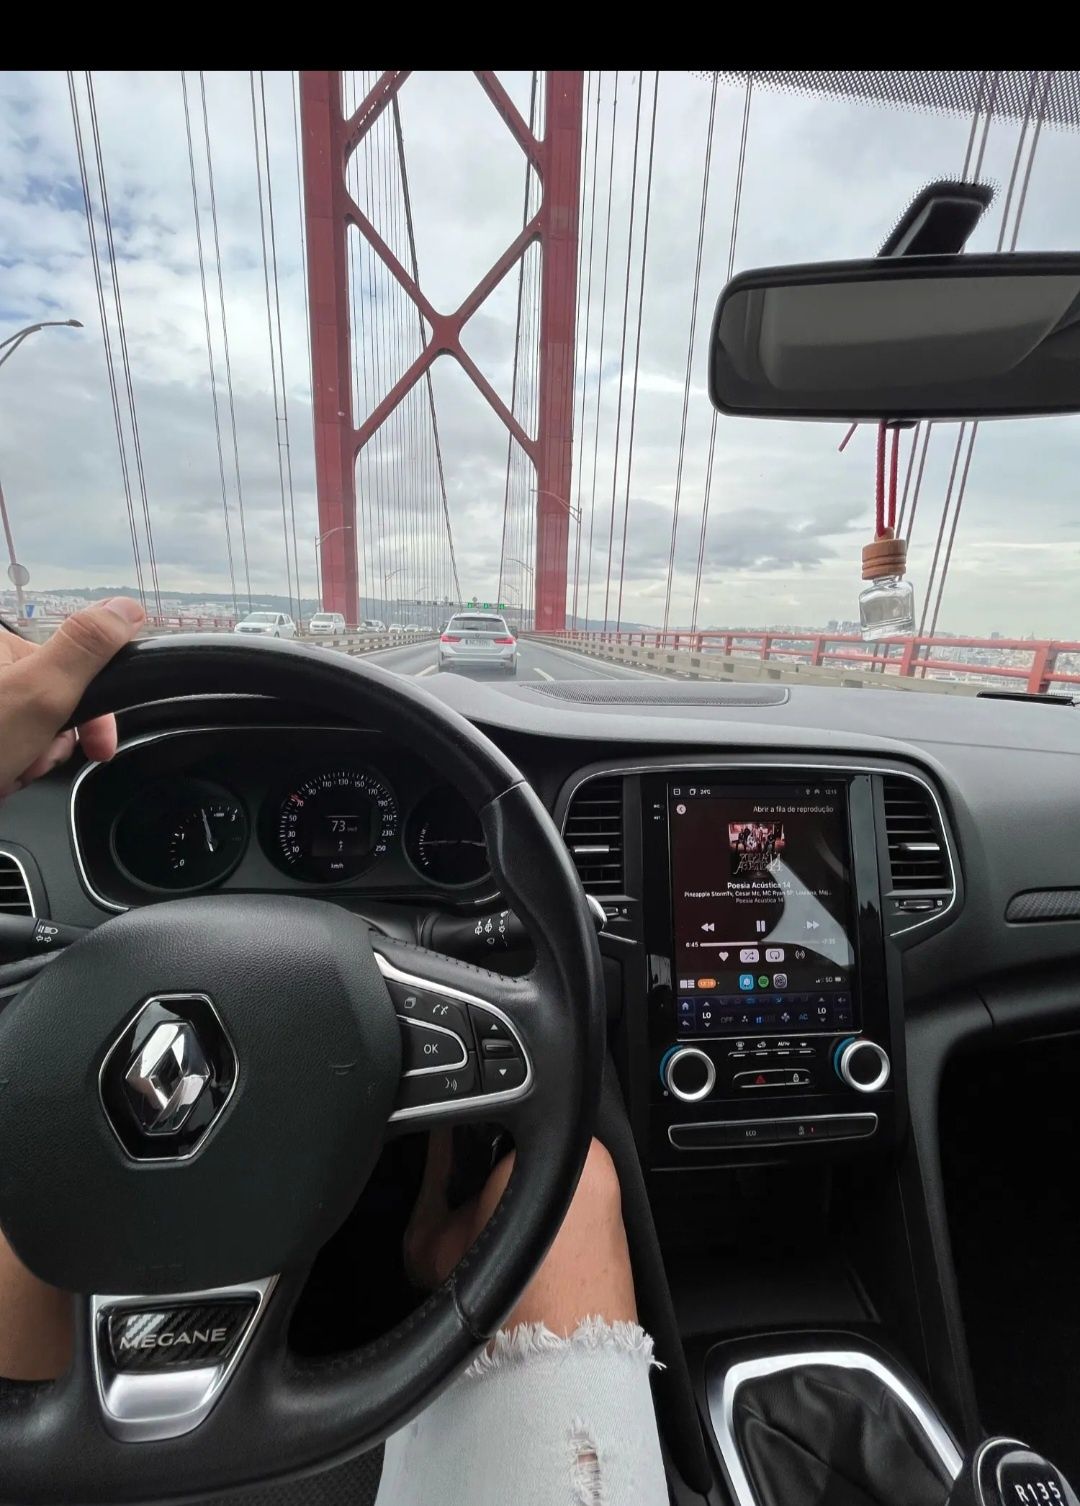 Navigatie  Android Renault Megane 4,Talisman,Koleos 2012-2019. 8gb Ram